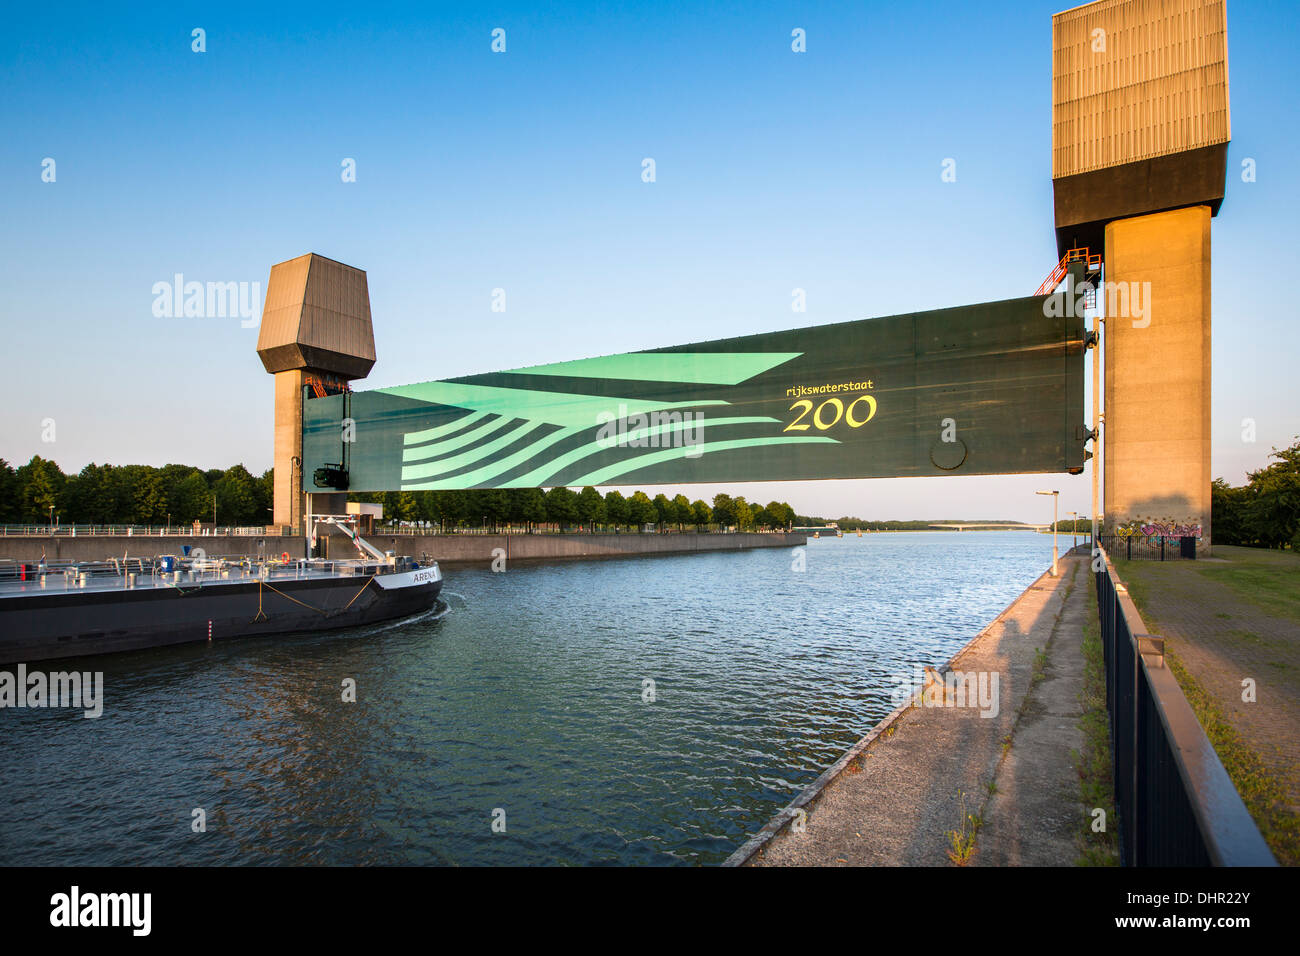 Niederlande, Rijswijk, Canal genannt Amsterdam-Rhein. Schlösser und Weir Komplex namens Prinses Marijke. Frachtschiff vorbei. Stockfoto